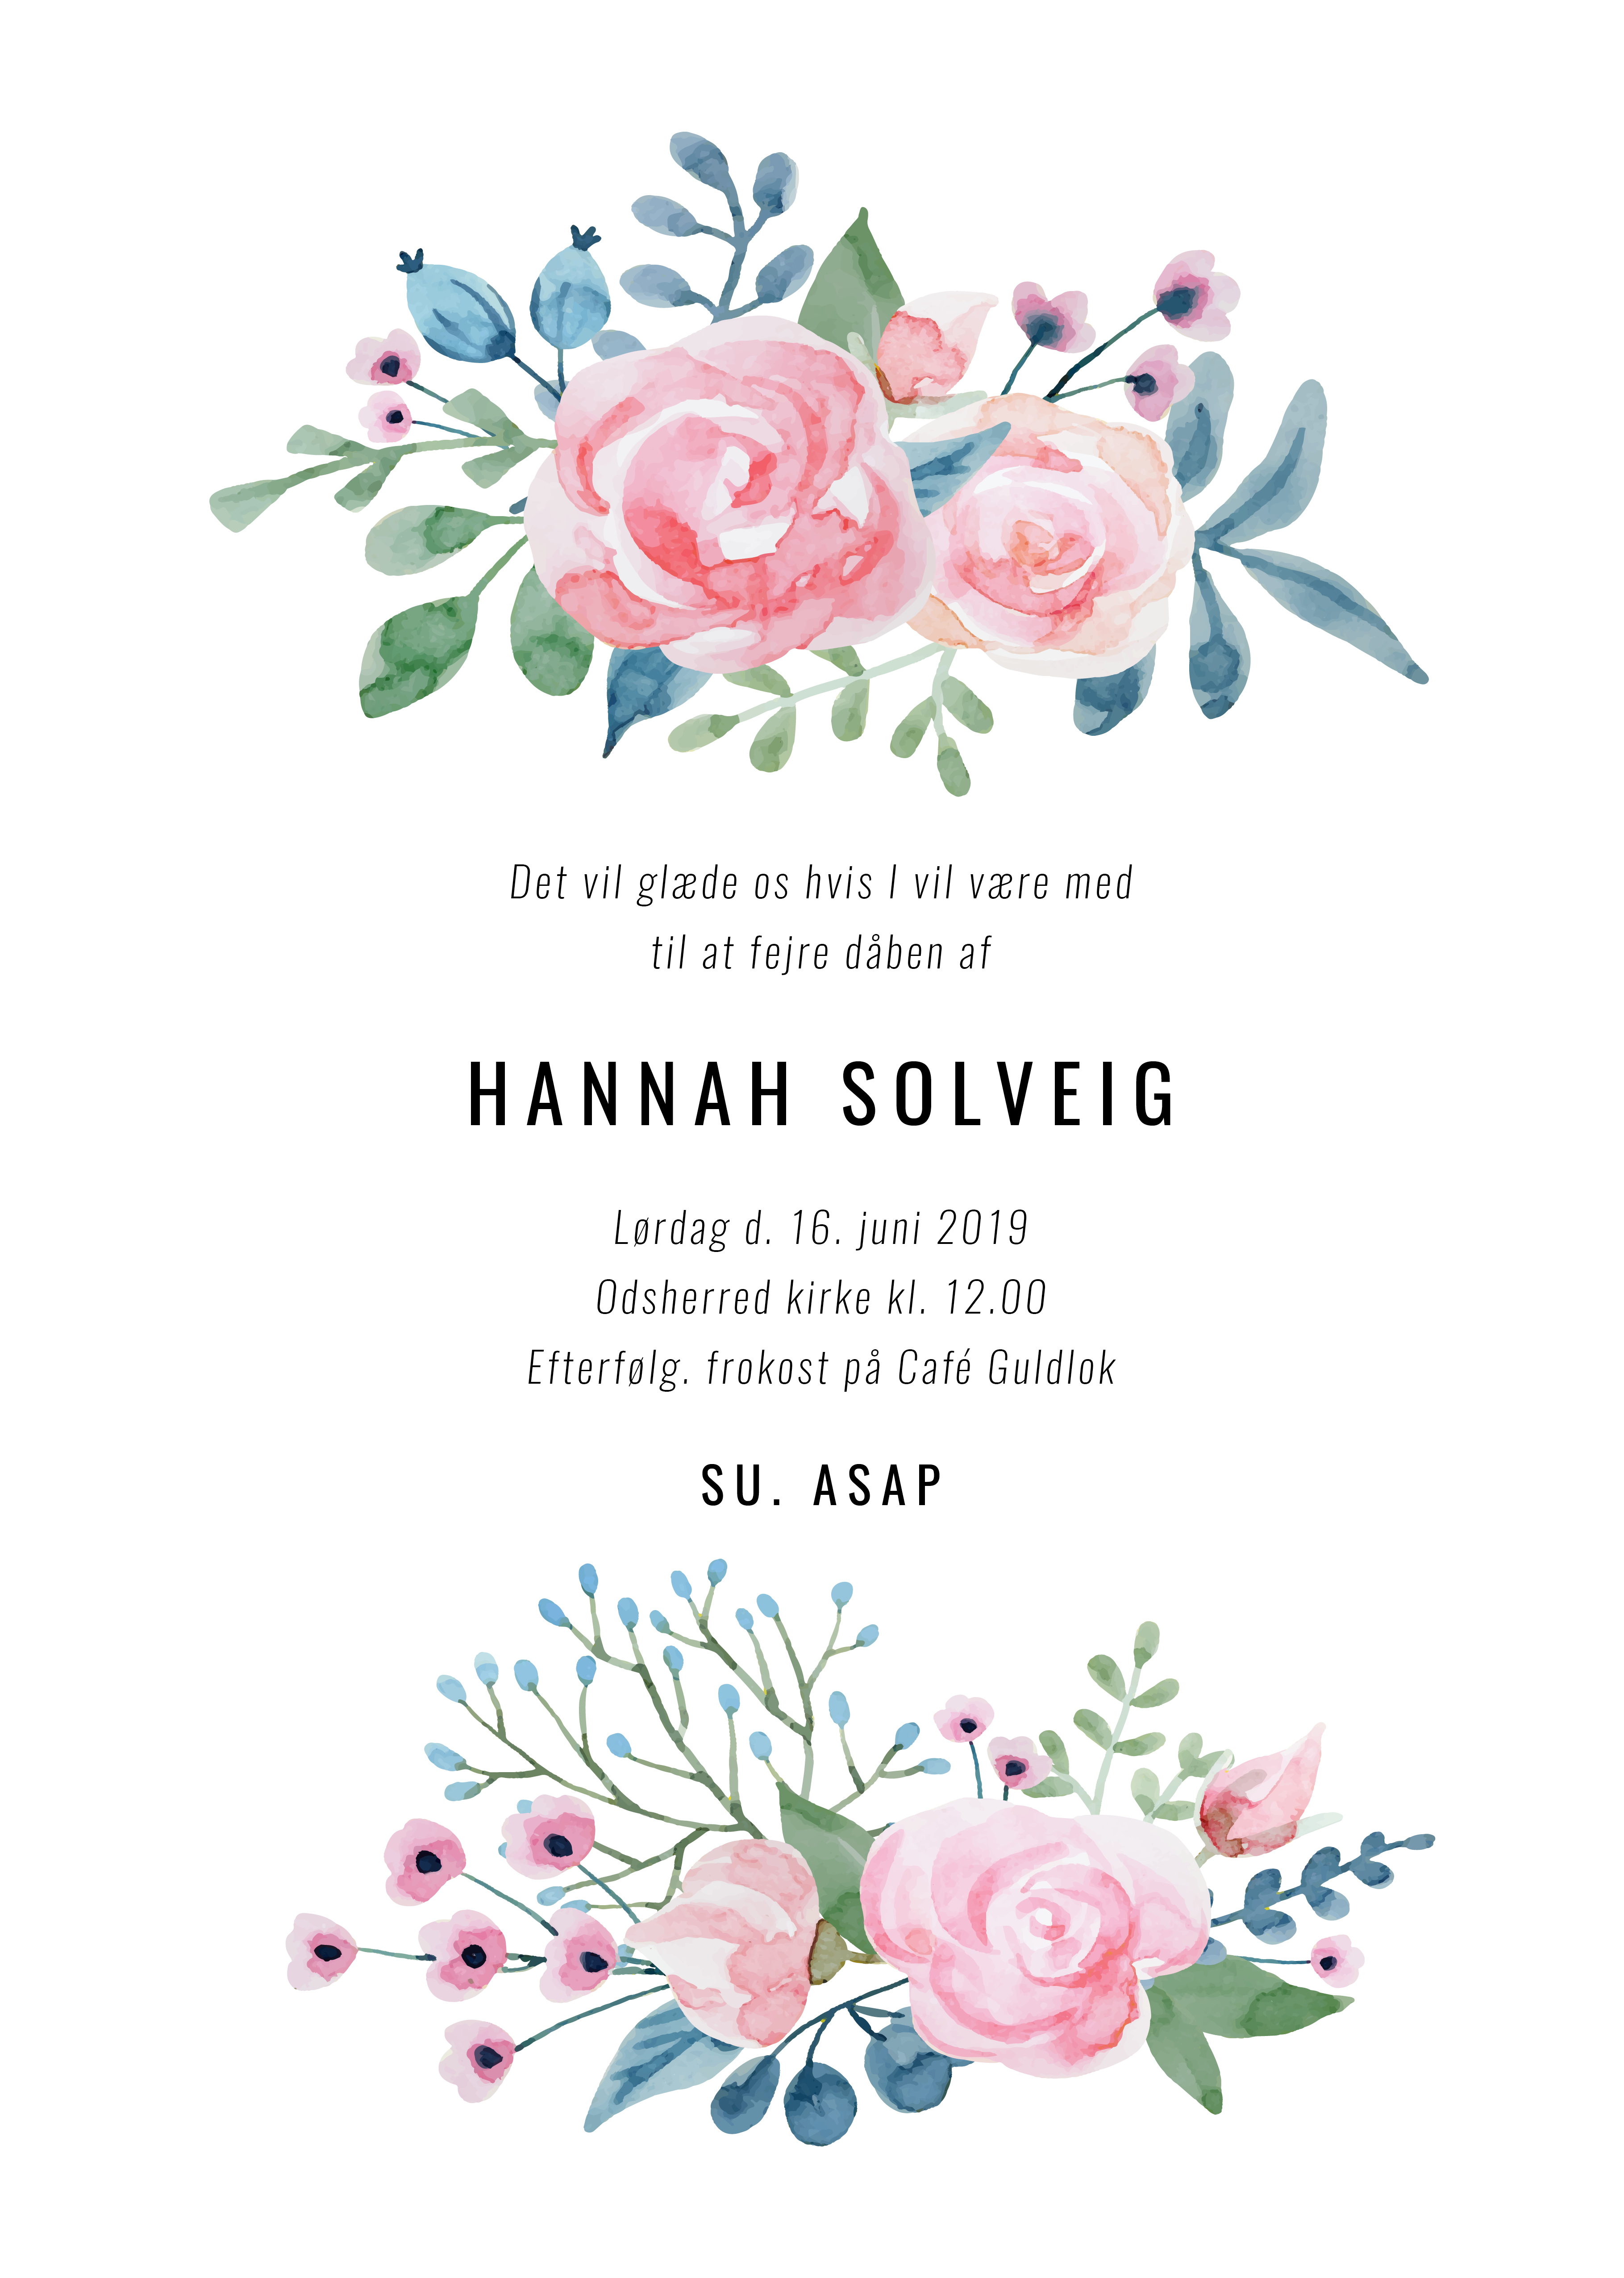 Invitationer - Hannah Solveig